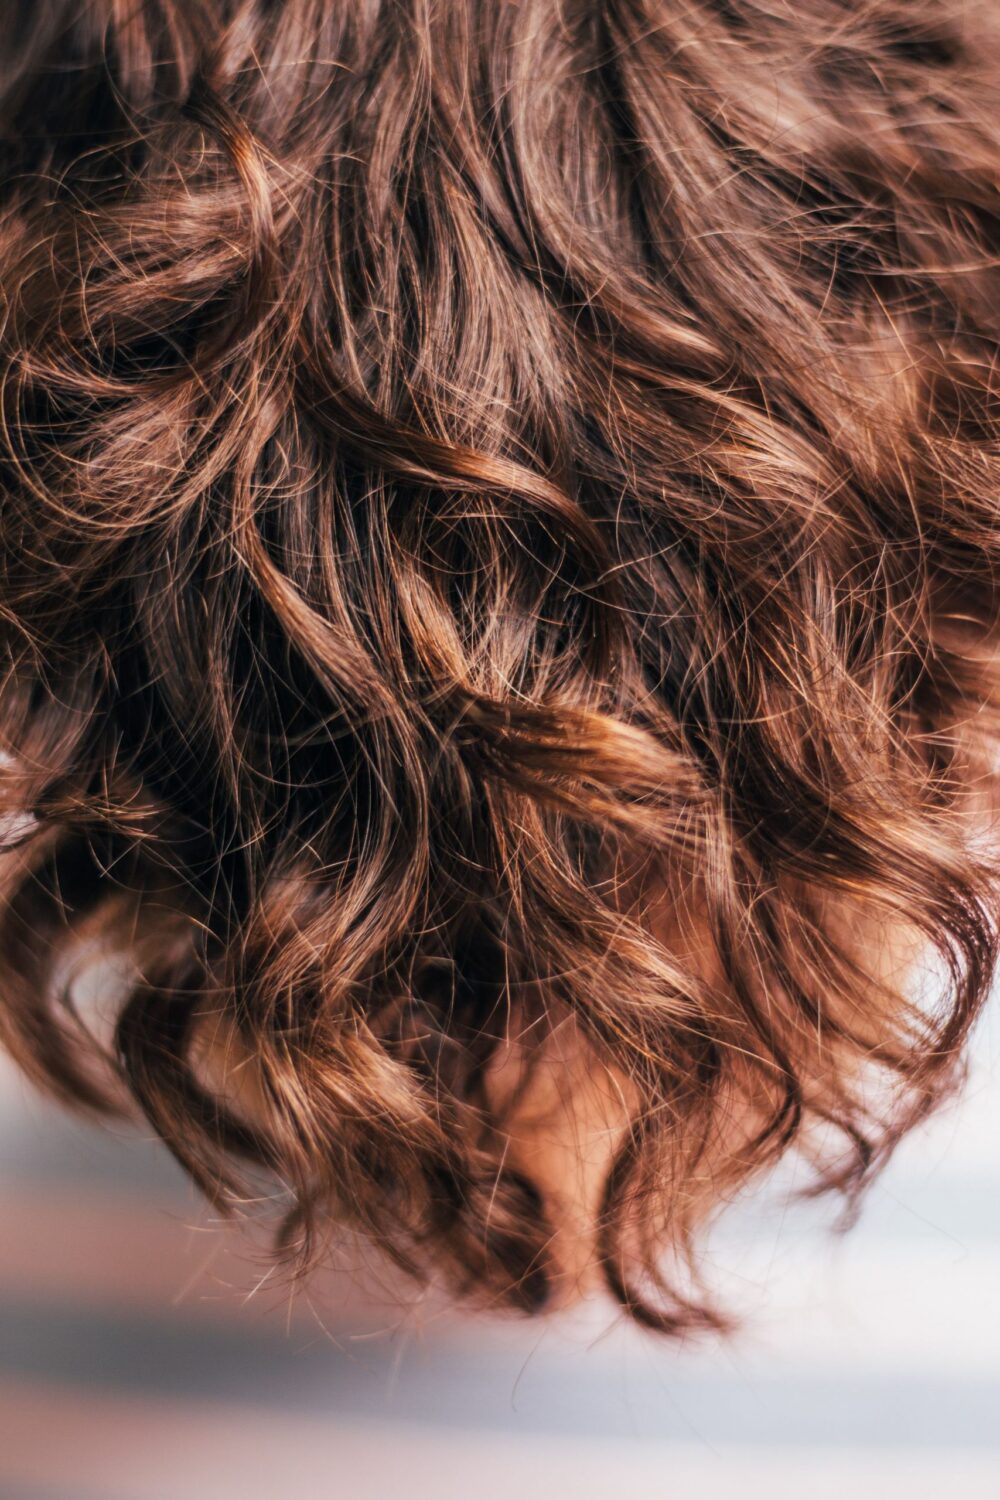 Przeszczep włosów - sposób na odzyskanie pięknej fryzury